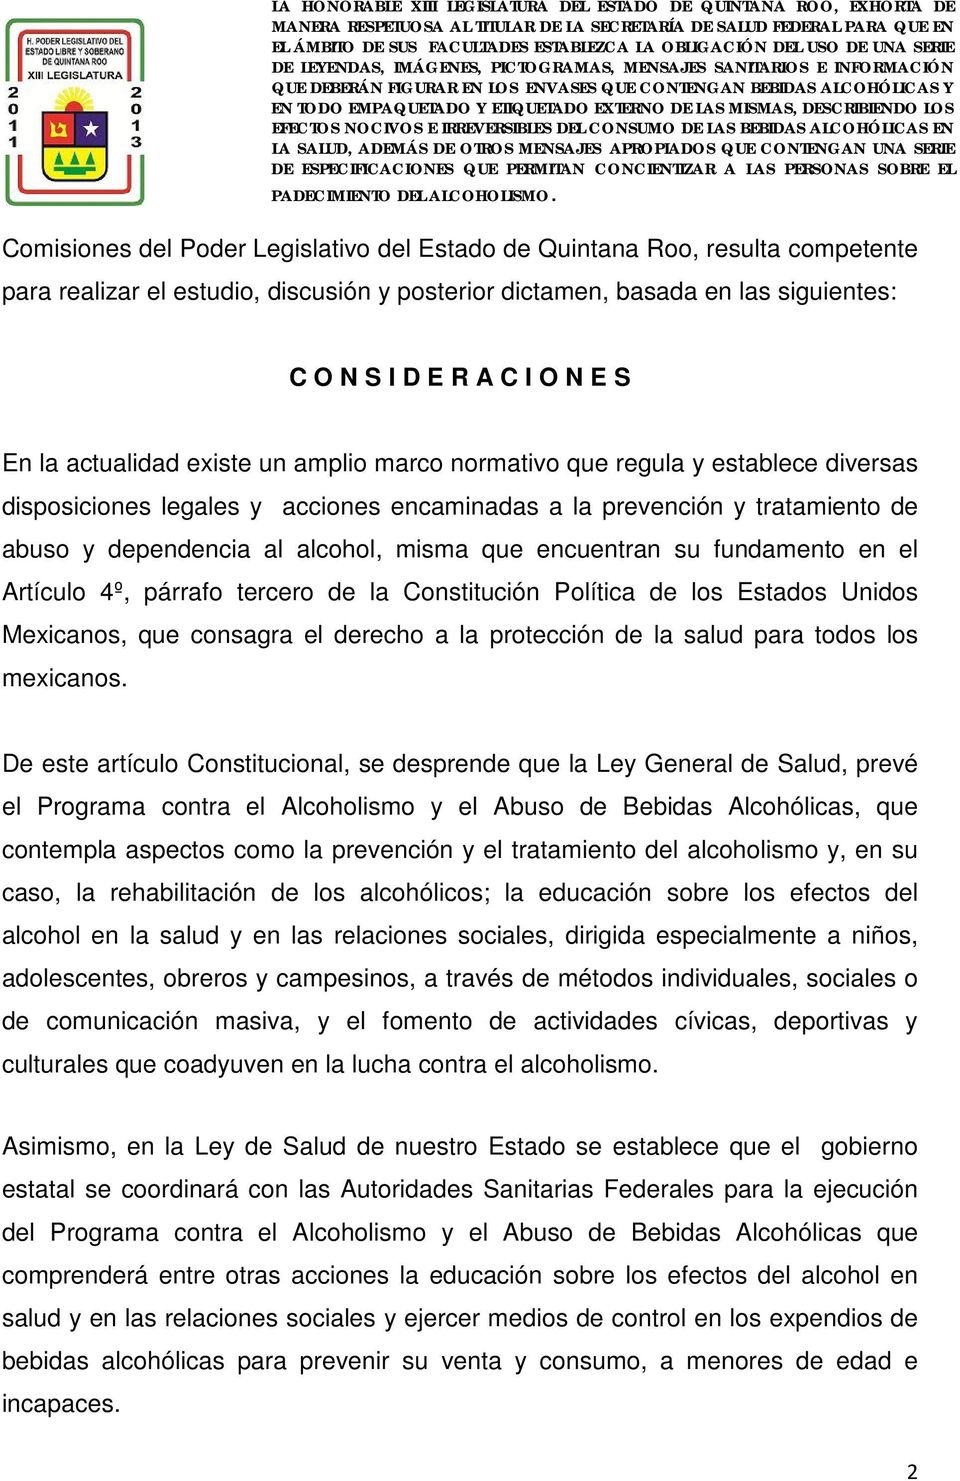 encuentran su fundamento en el Artículo 4º, párrafo tercero de la Constitución Política de los Estados Unidos Mexicanos, que consagra el derecho a la protección de la salud para todos los mexicanos.